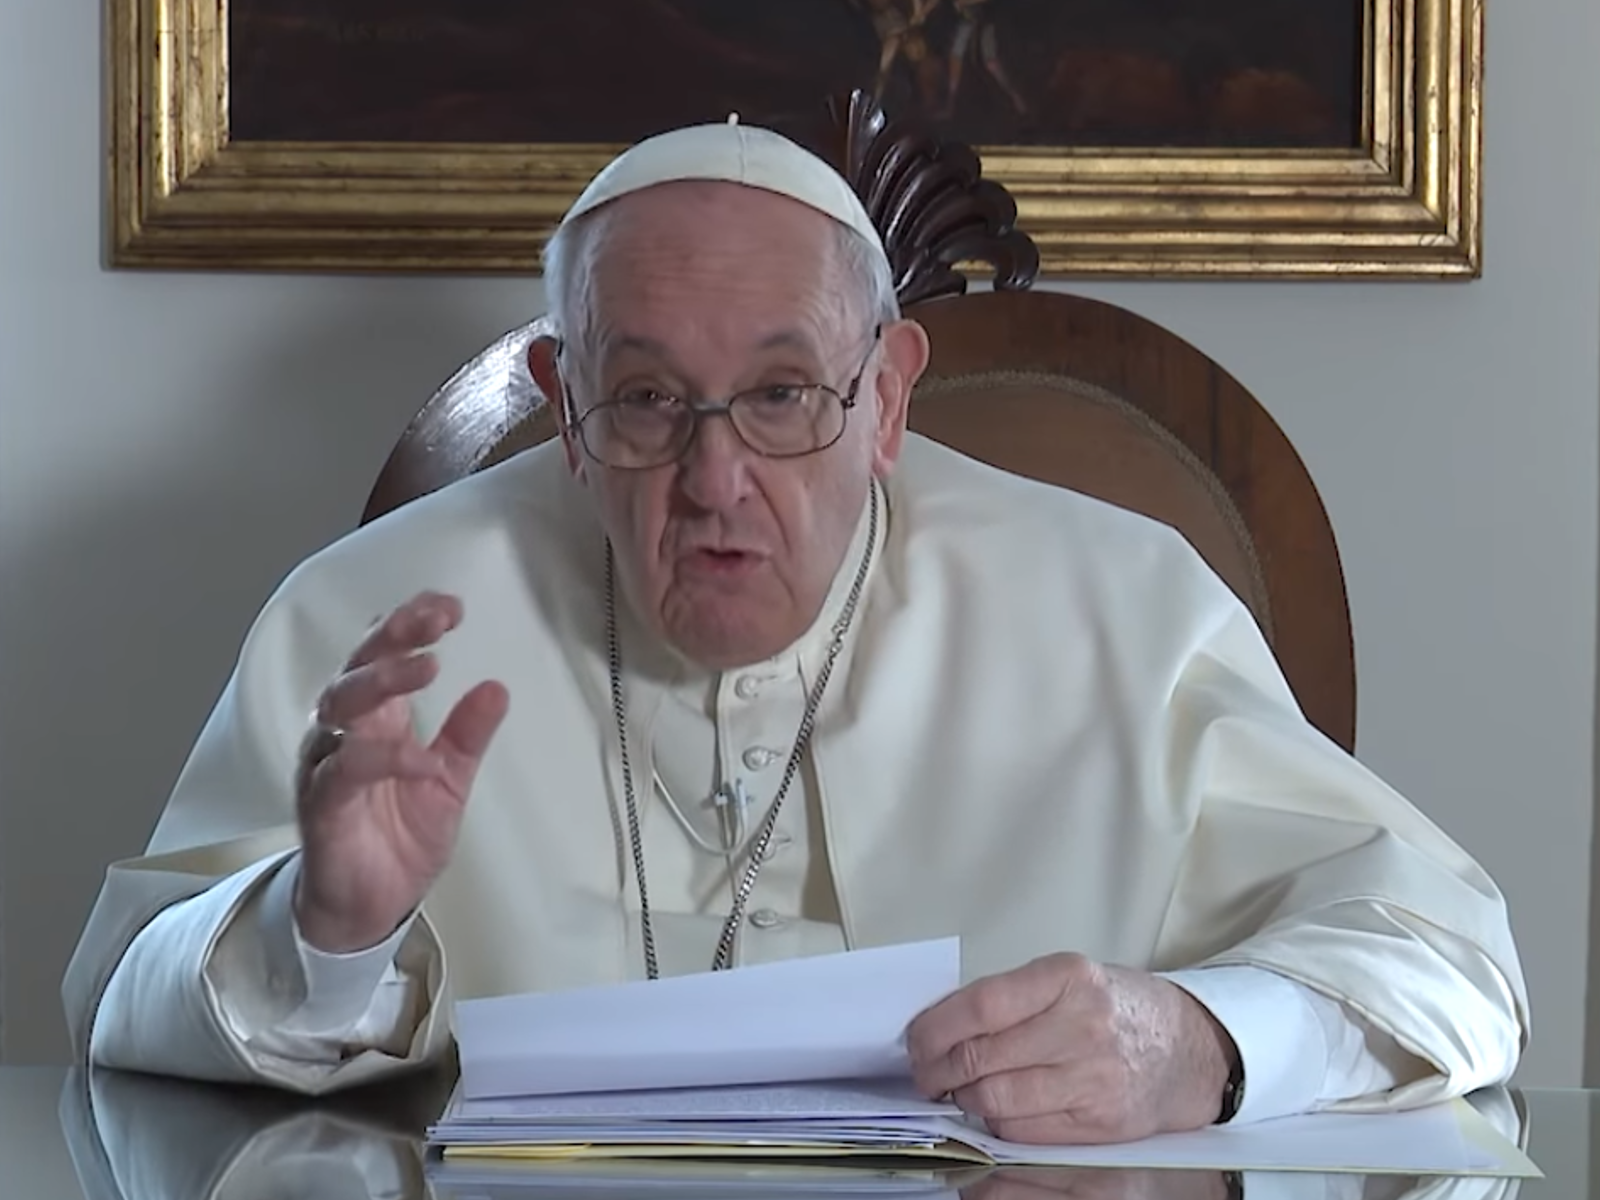 El mundo necesita respirar paz, dice el Papa en un videomensaje